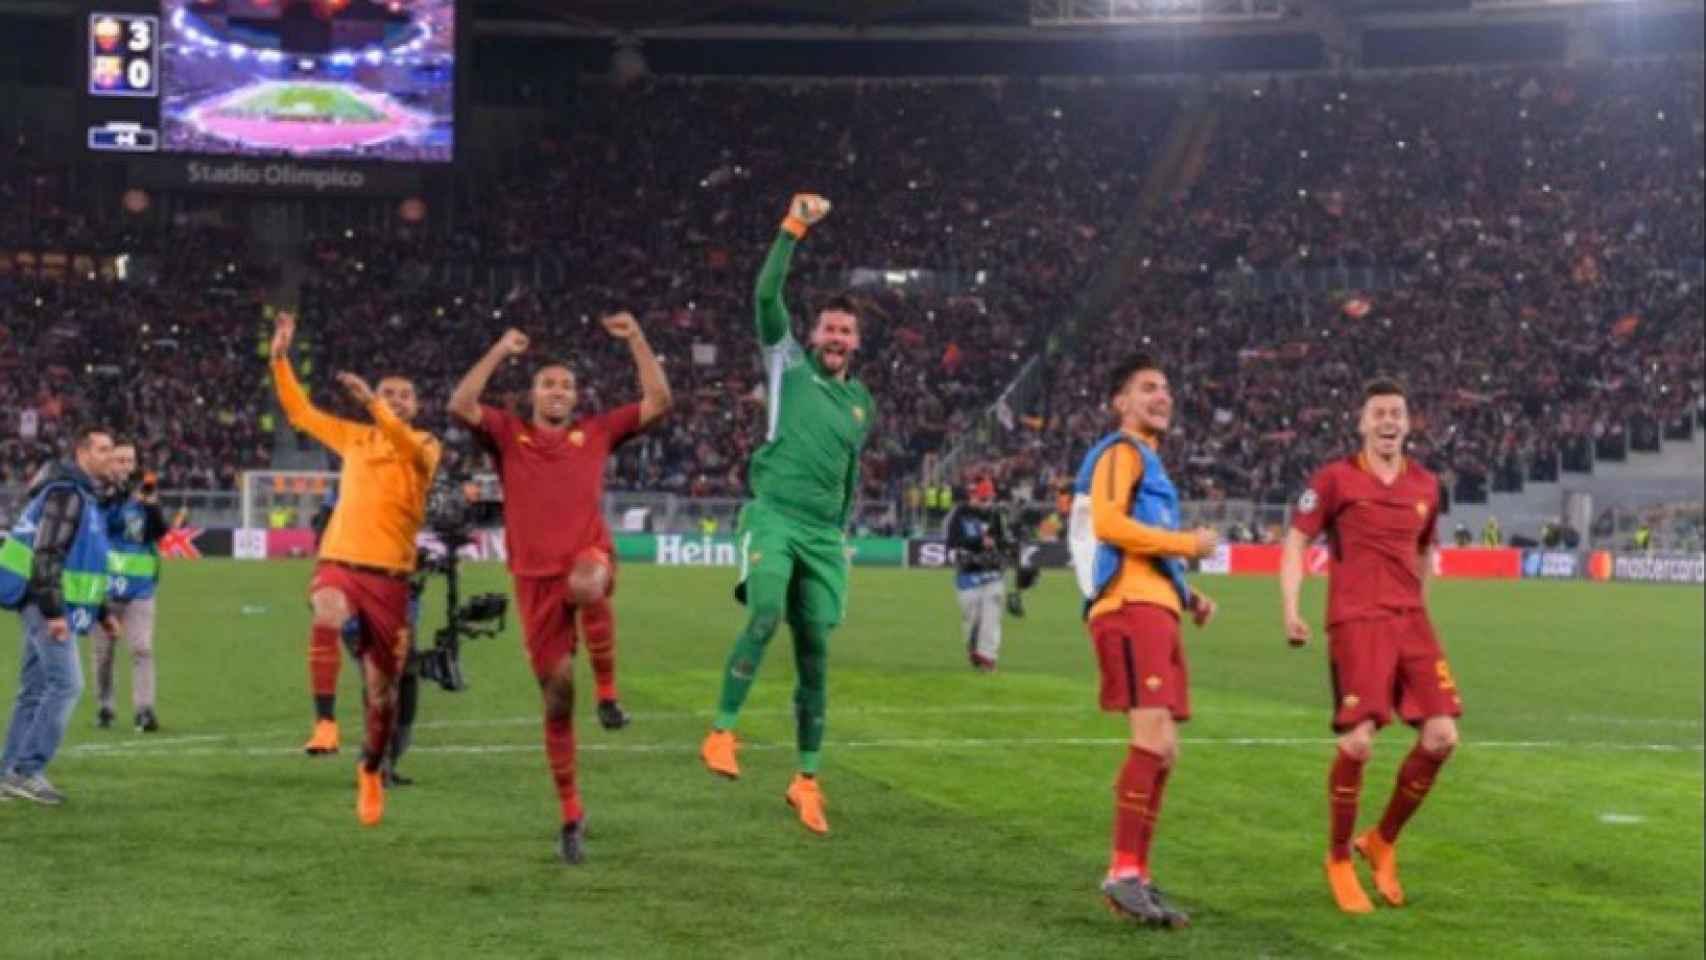 Los jugadores de la Roma celebran. Foto: asroma.com